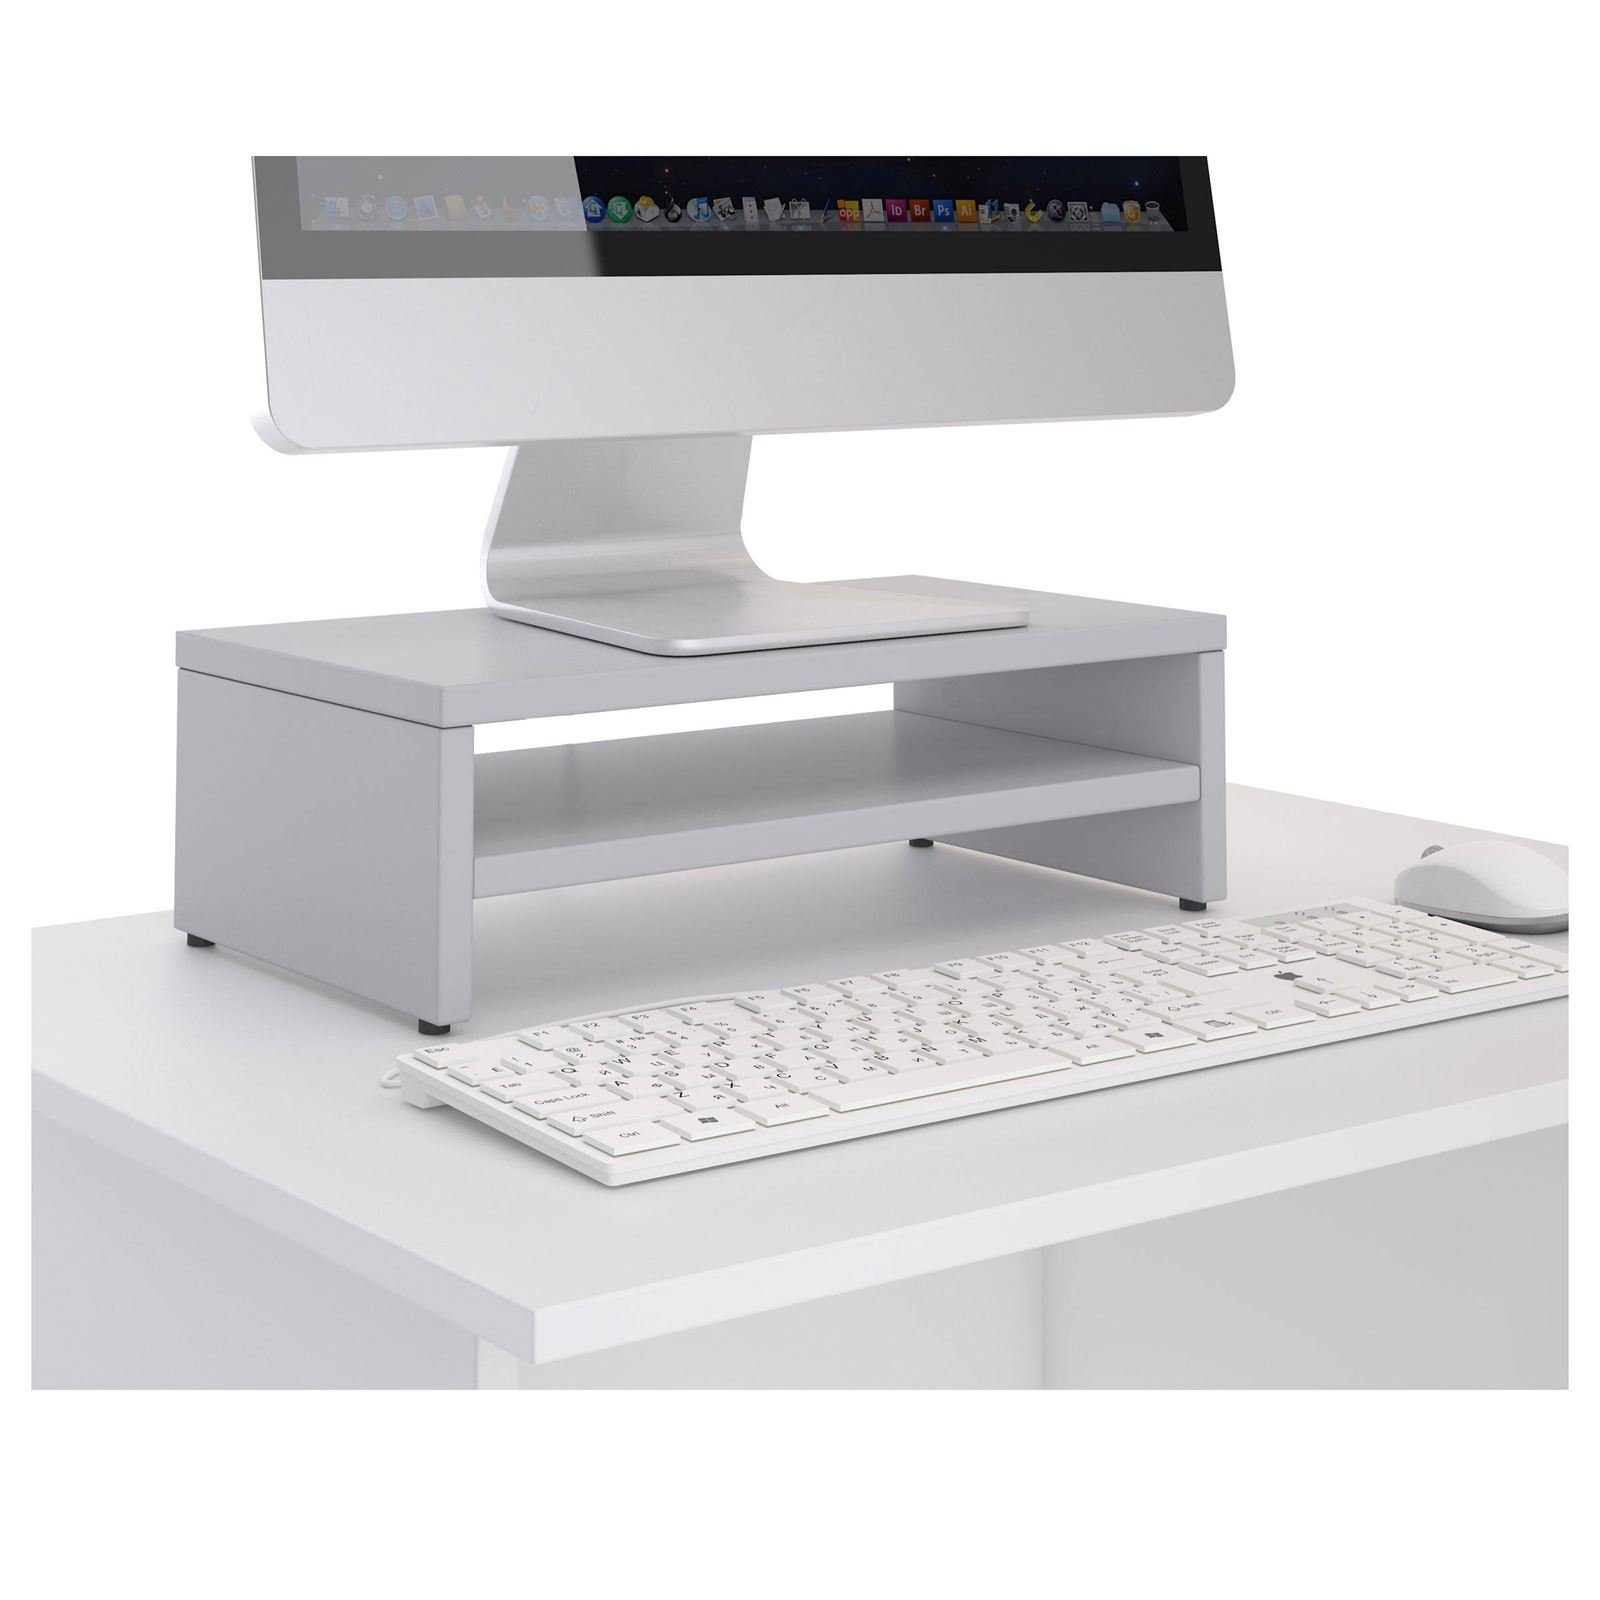 Monitorständer inkl. Monitorerhöhung Schreibtischaufsatz hellgrau Bildschirmaufsatz SUBIDA, Ablagefach CARO-Möbel